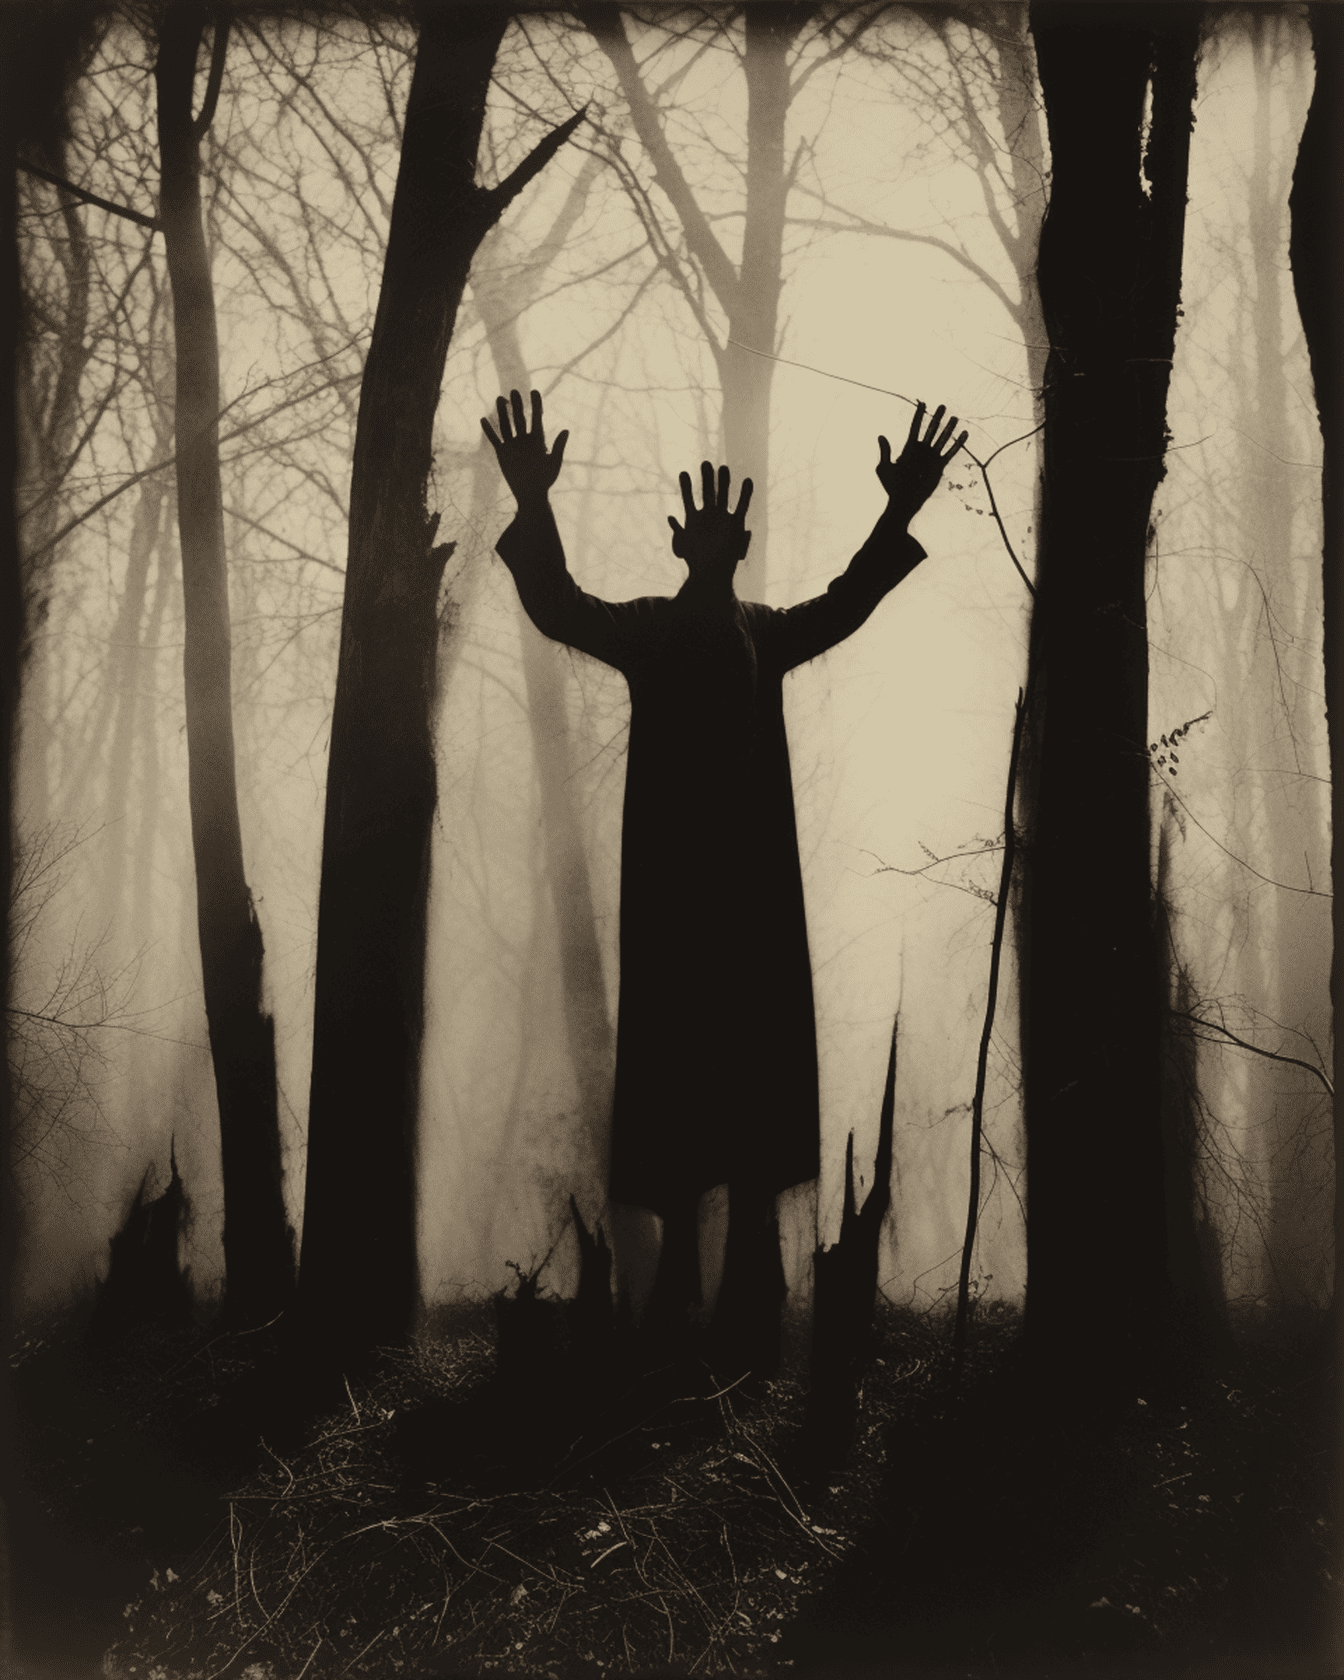 Beängstigende Silhouette einer Person mit Händen in dunklem Wald